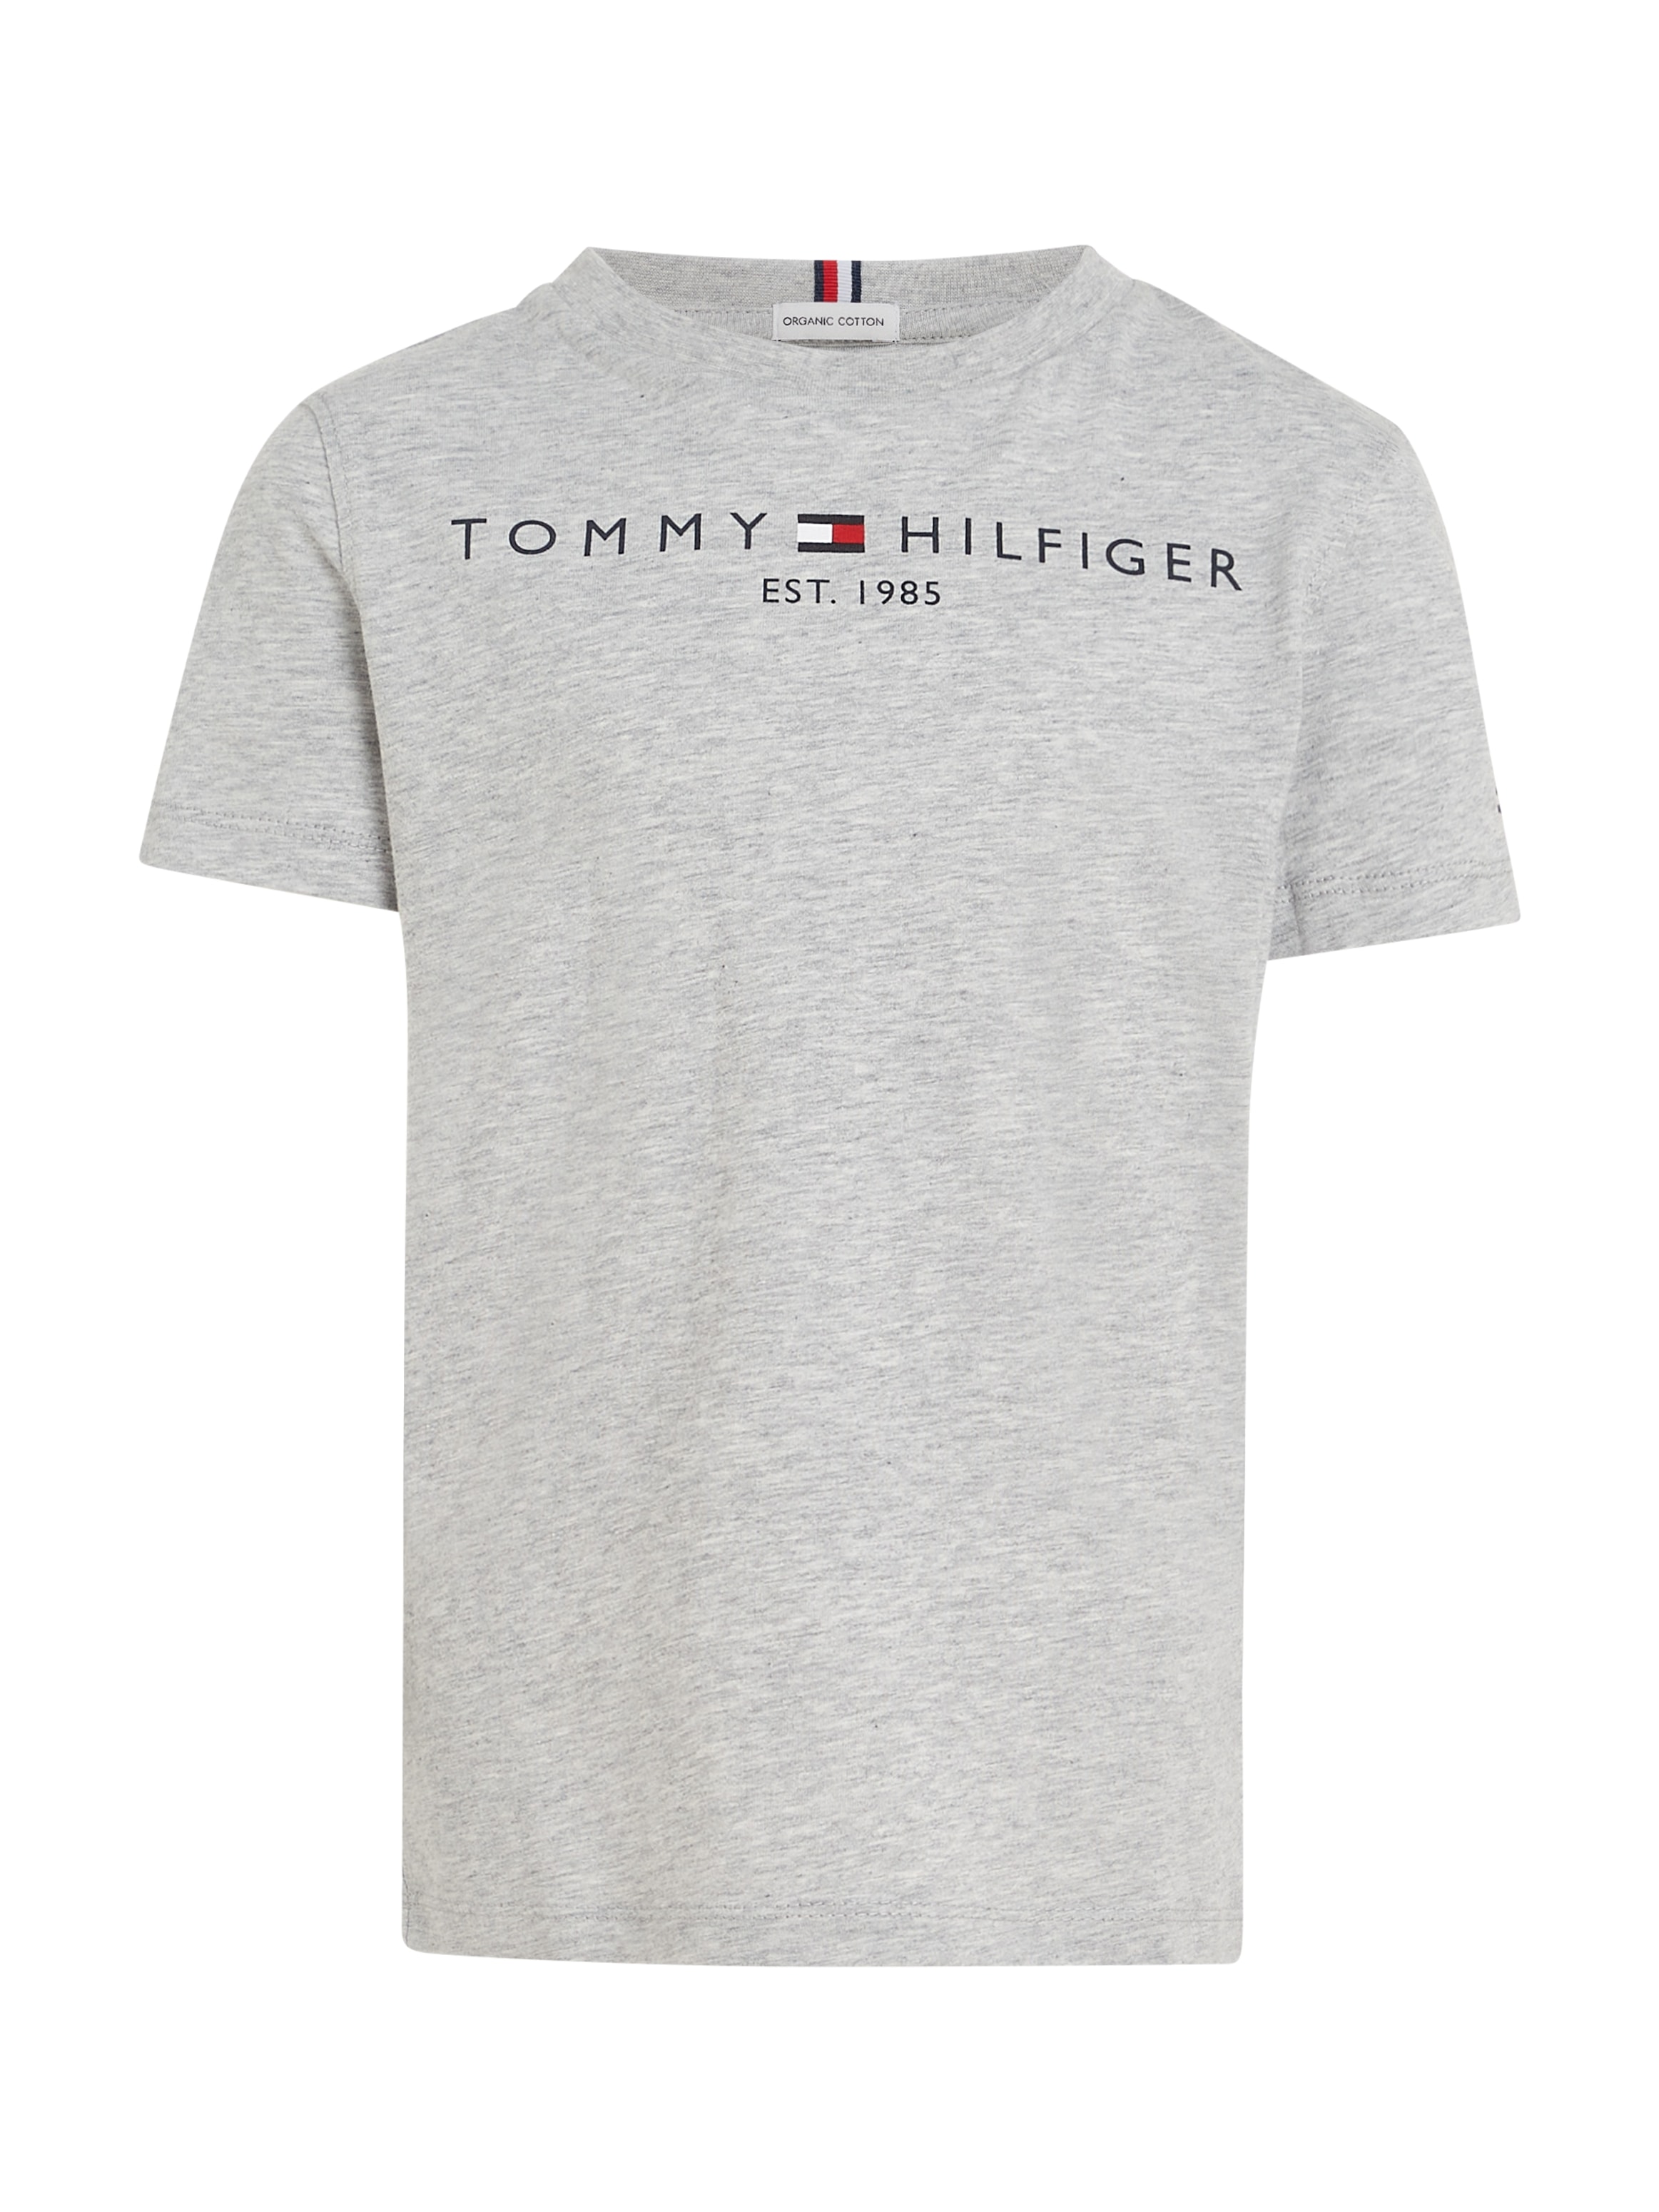 Tommy Hilfiger T-Shirt »ESSENTIAL TEE«, Kinder Kids Junior MiniMe,für Jungen und Mädchen